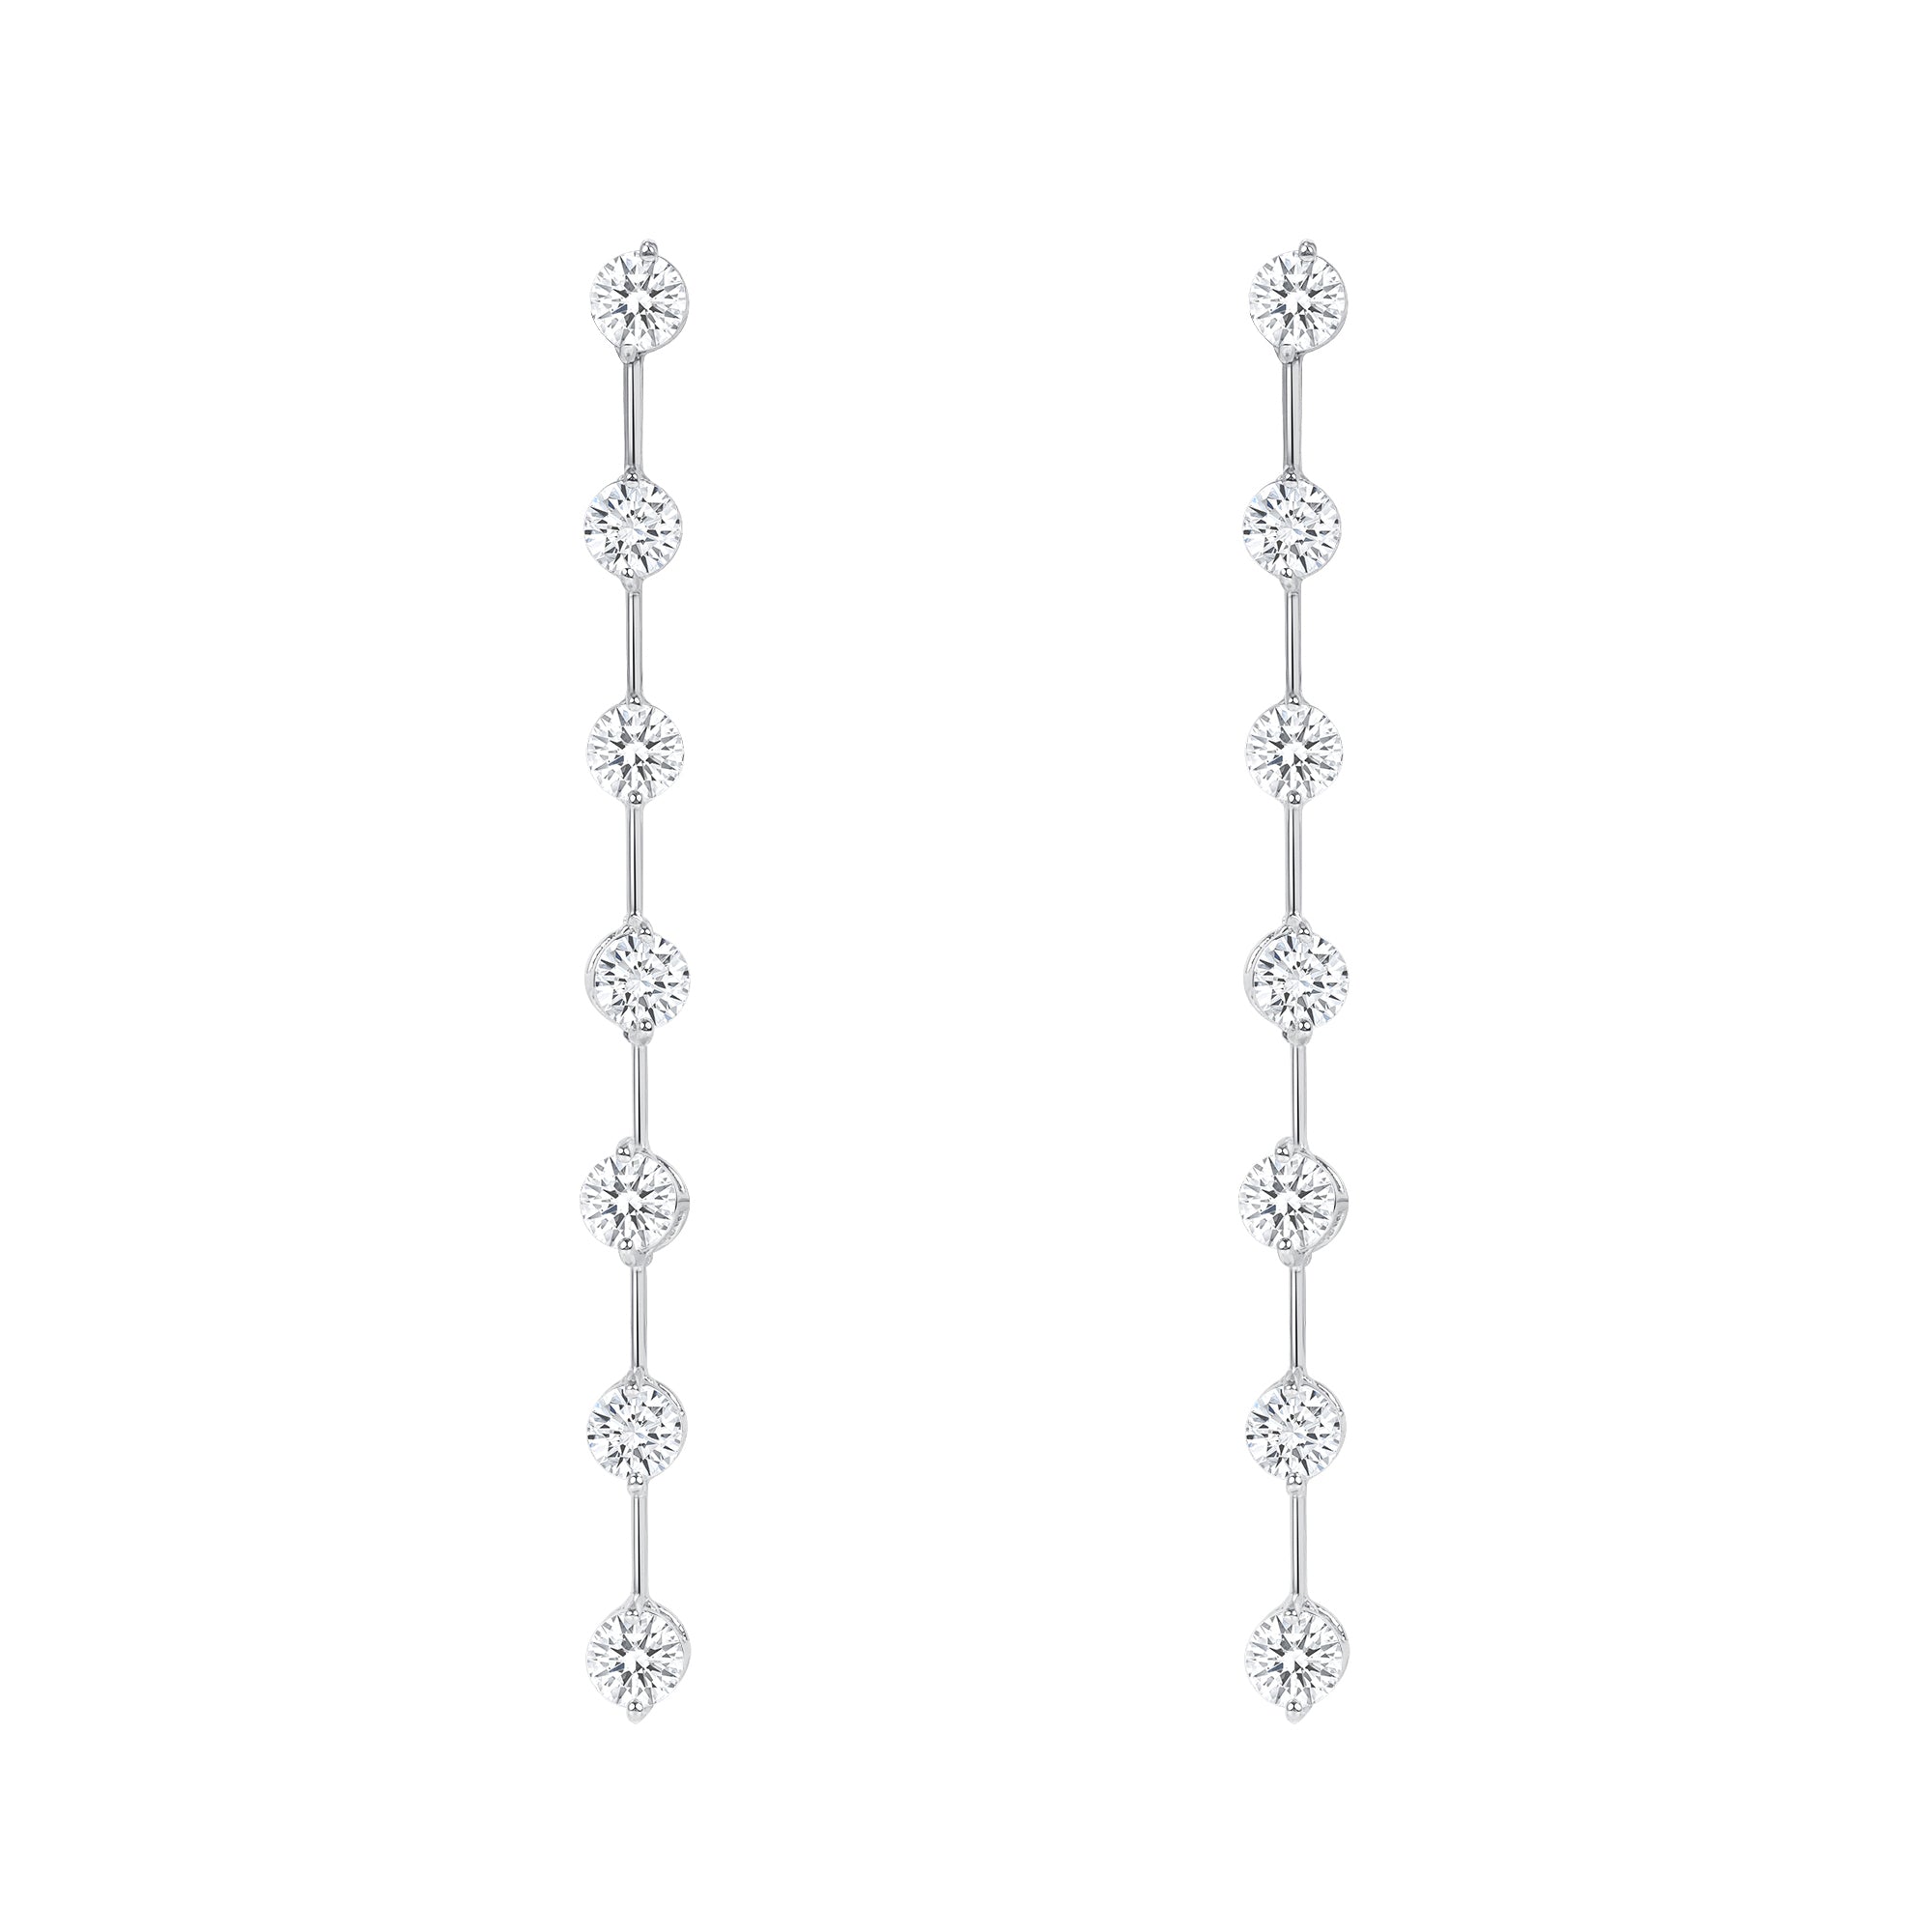 Elegant Round Brilliant Diamond Dangling Earrings in 18K White Gold